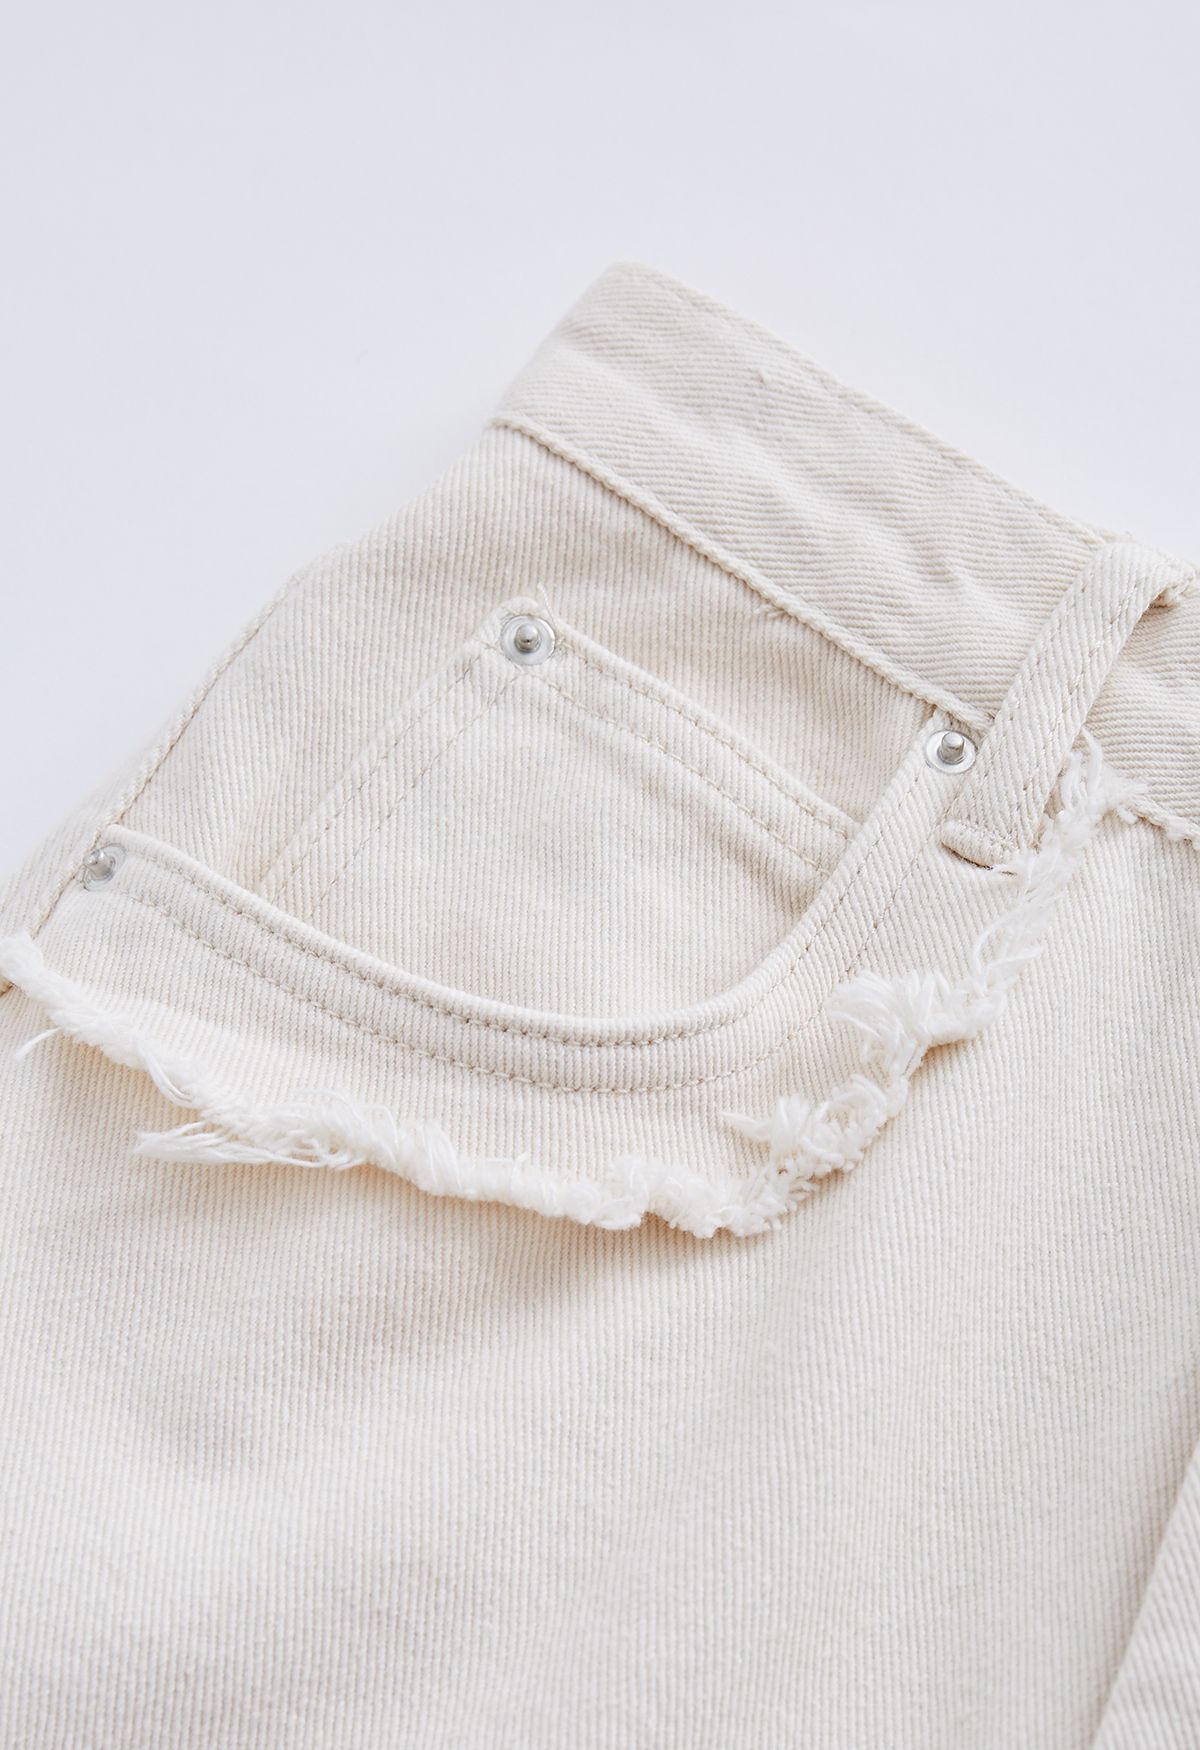 Jeans Flare de bolso clássico com detalhe desfiado em marfim